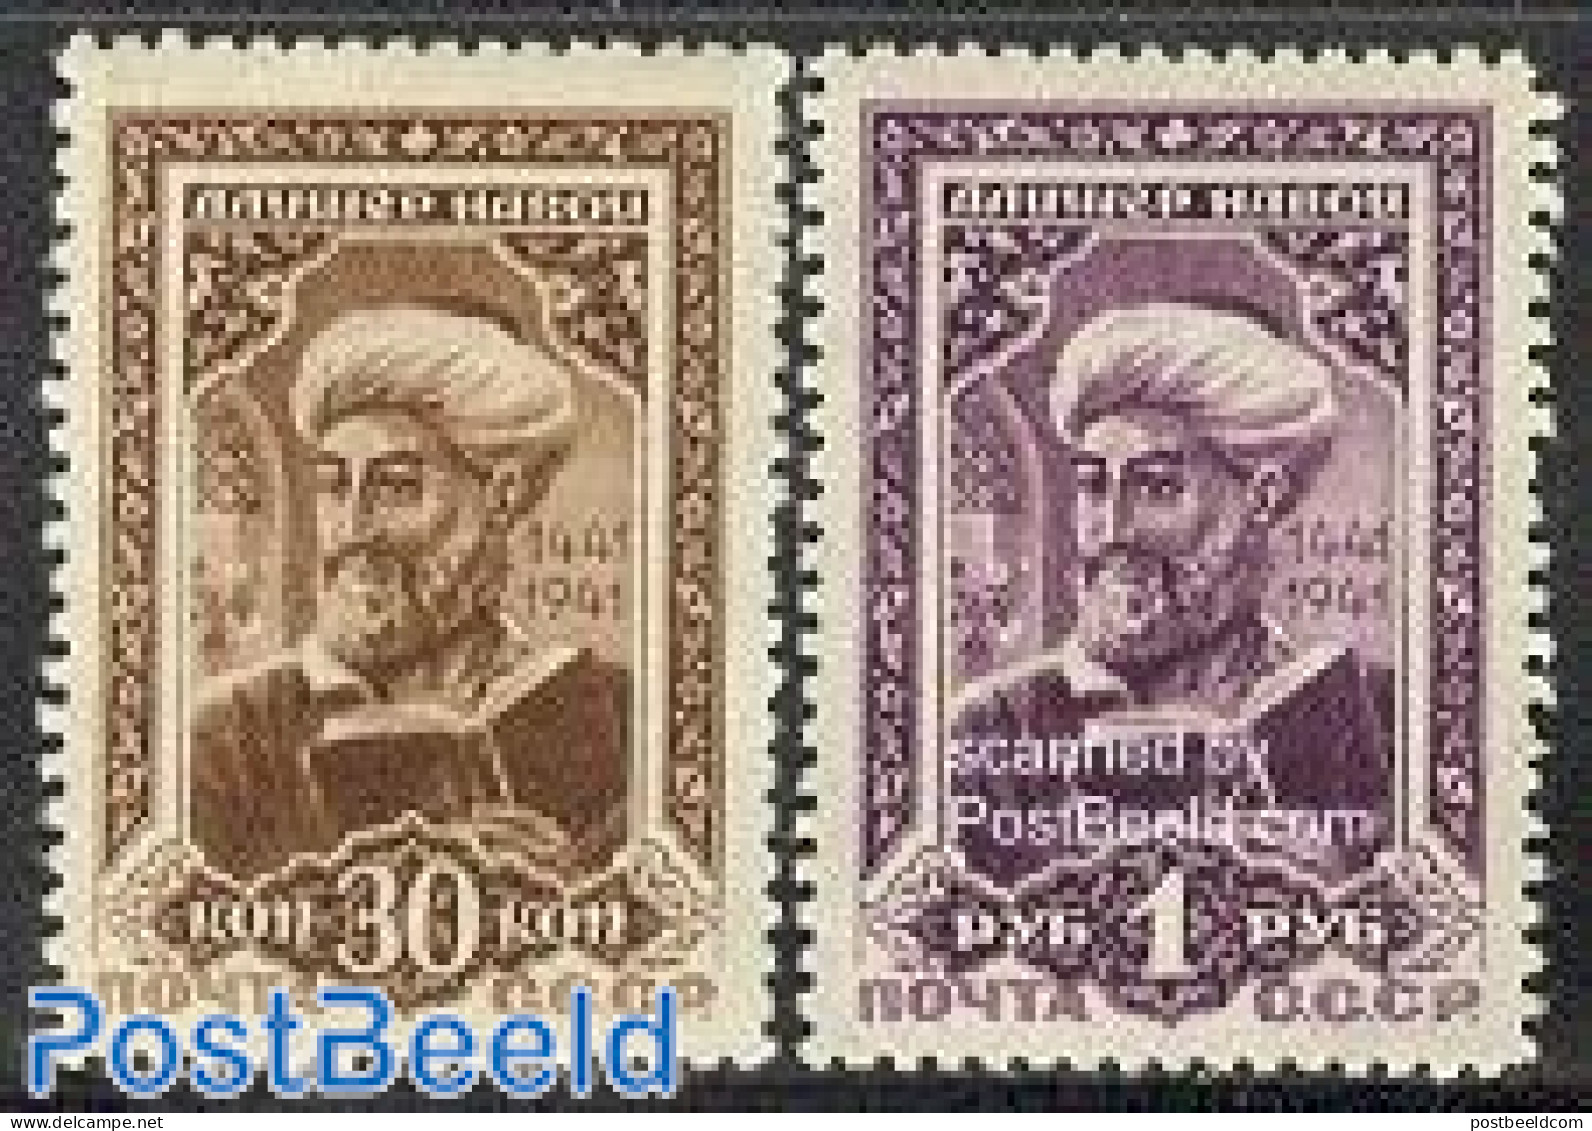 Russia, Soviet Union 1942 A. Navoi 2v, Unused (hinged), Art - Authors - Unused Stamps